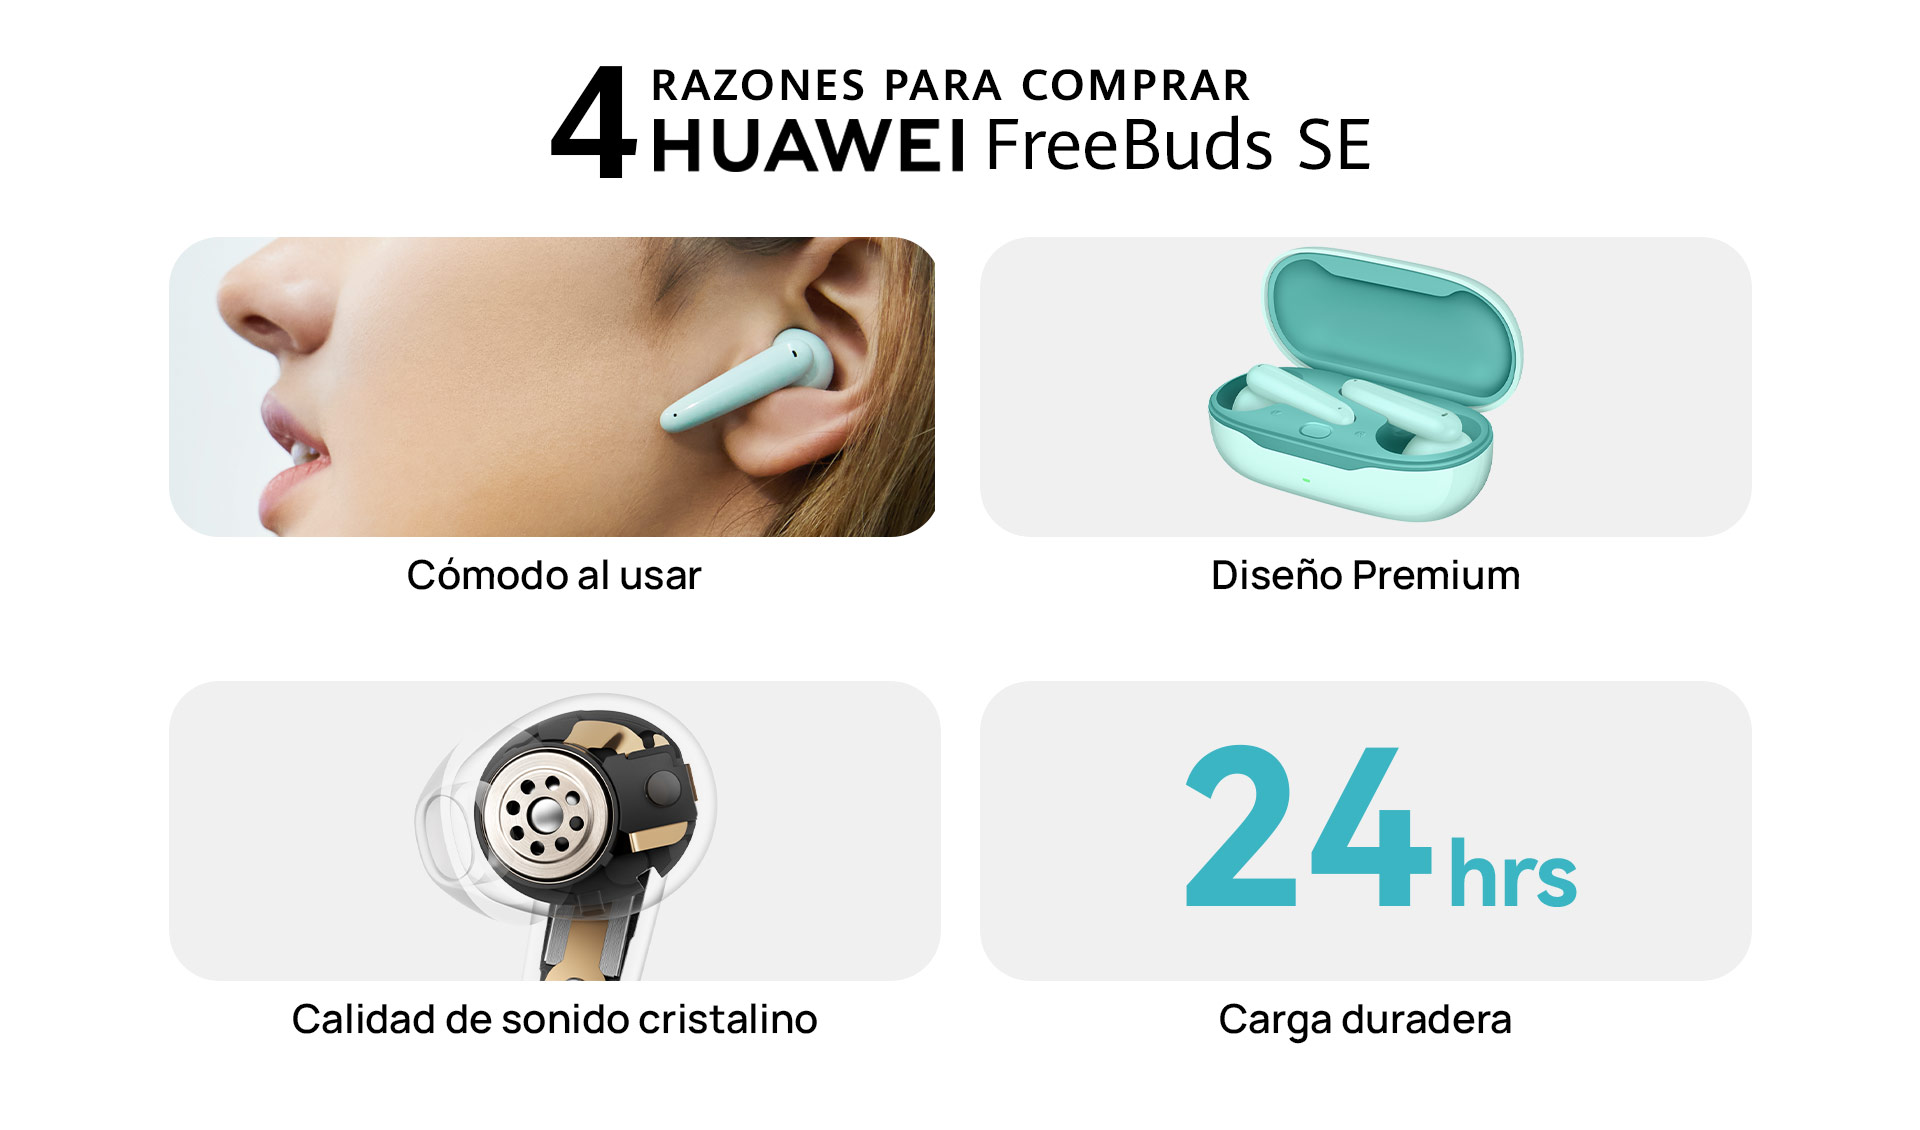 Huawei FreeBuds SE 2: Detalles y precio